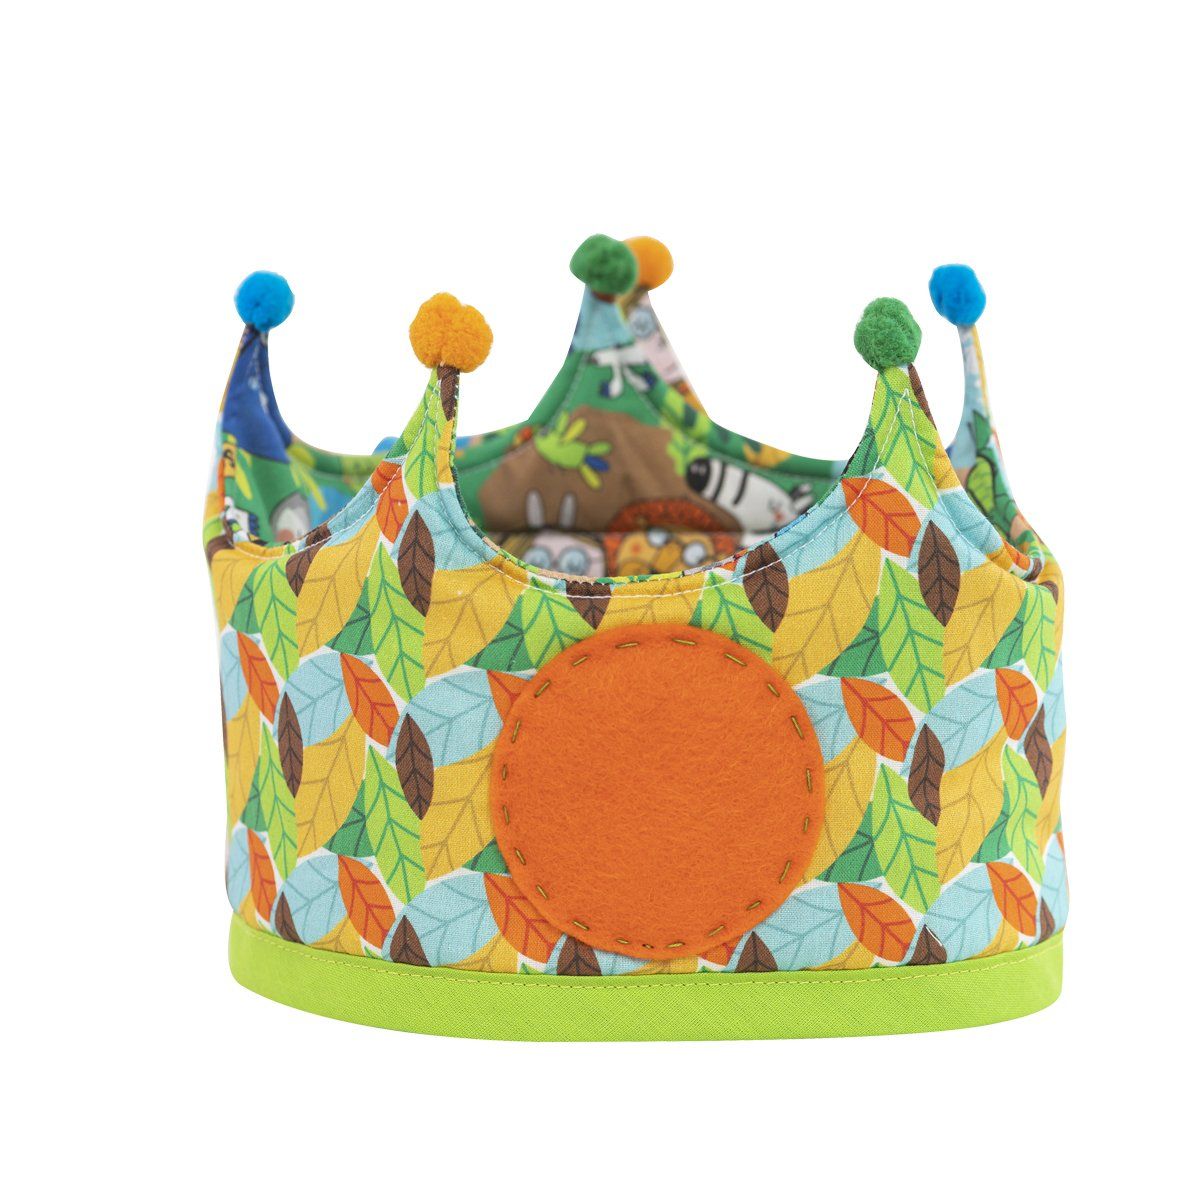 Corona de Tela Unisex para cumpleaños. Modelo Mónaco